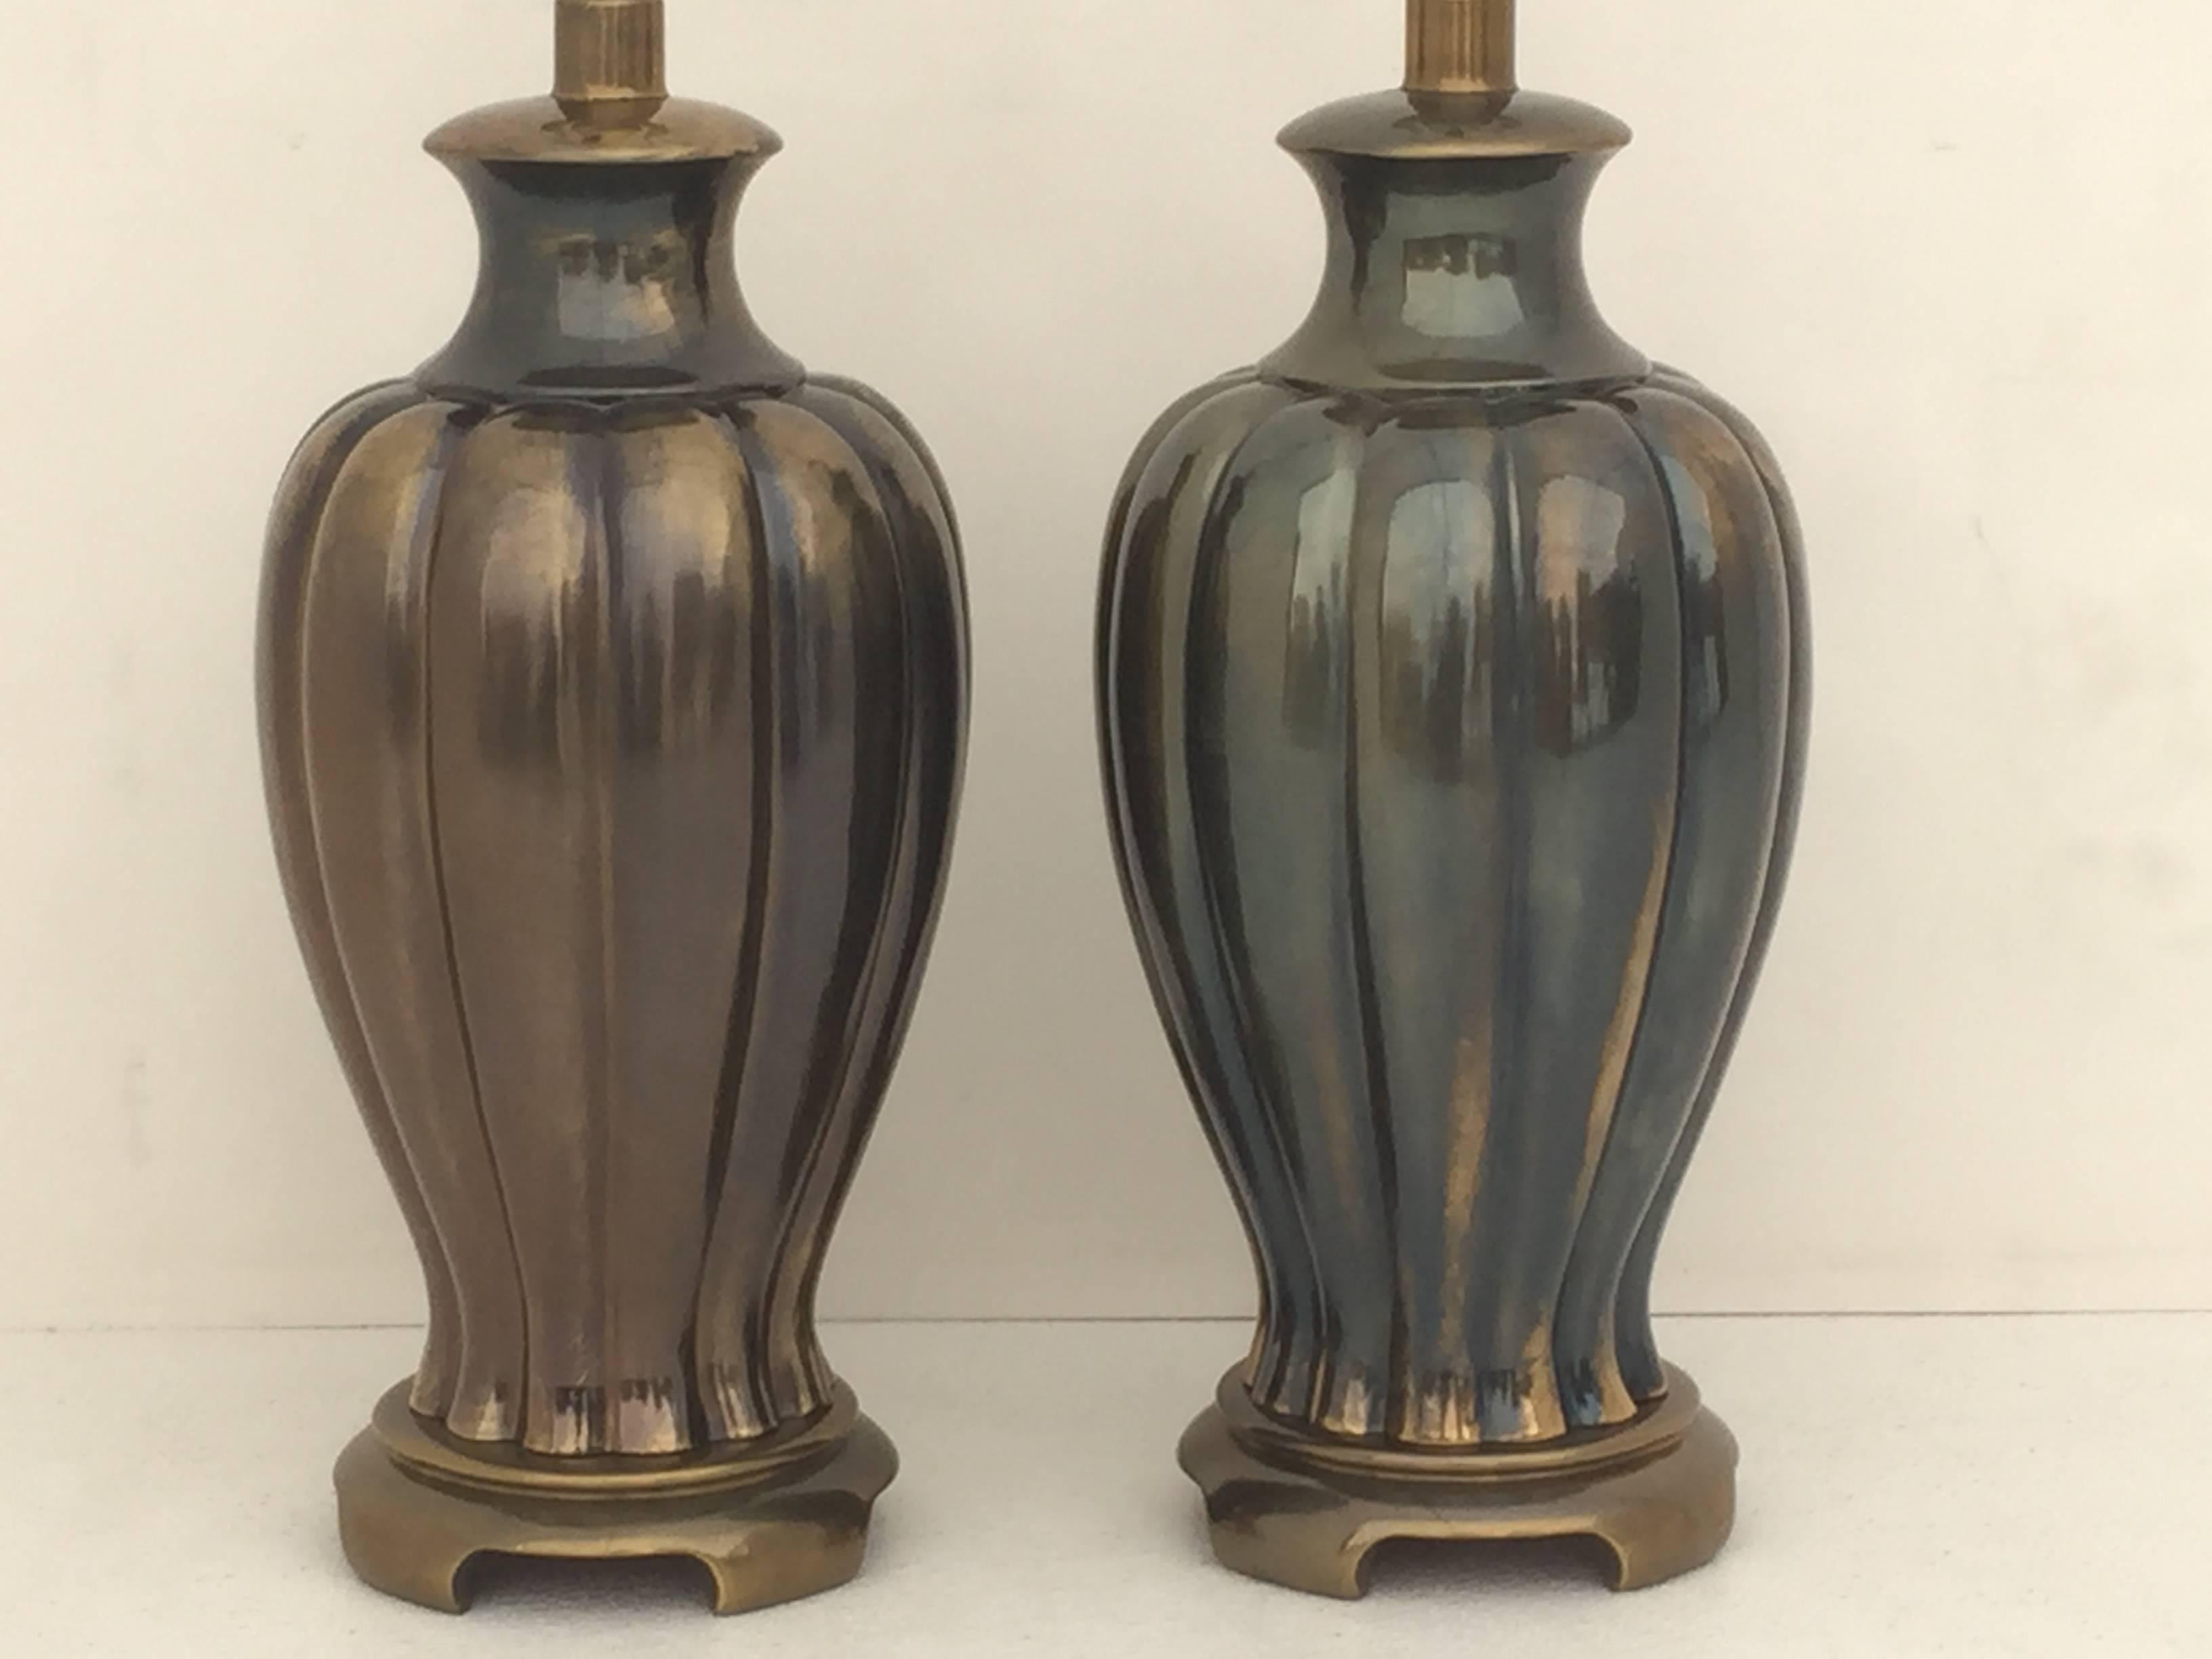 Paire de lampes de table en pot de gingembre en finition bronze antique.